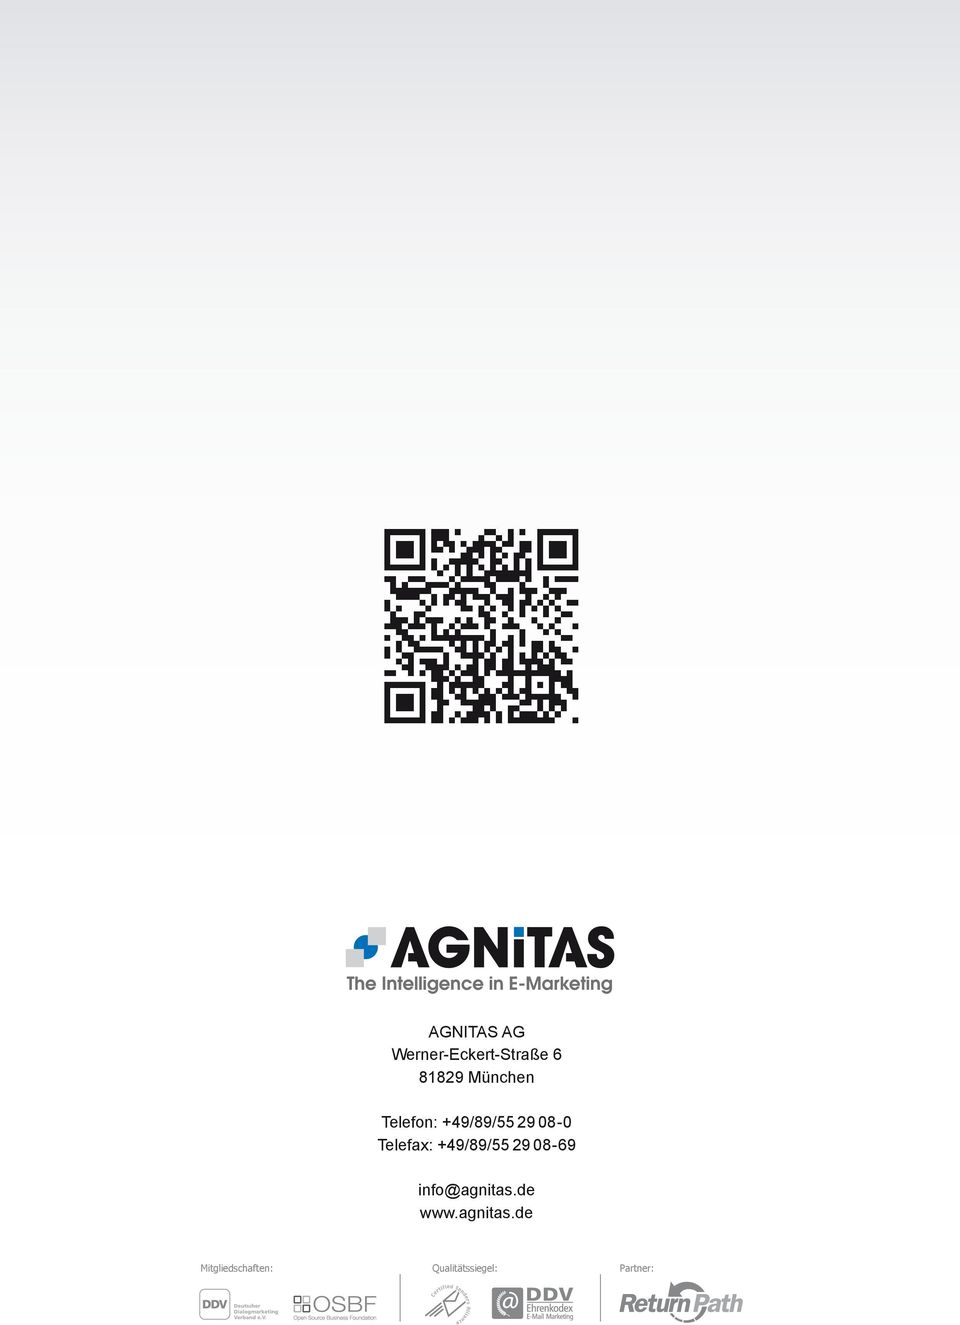 +49/89/55 29 08-69 info@agnitas.de www.